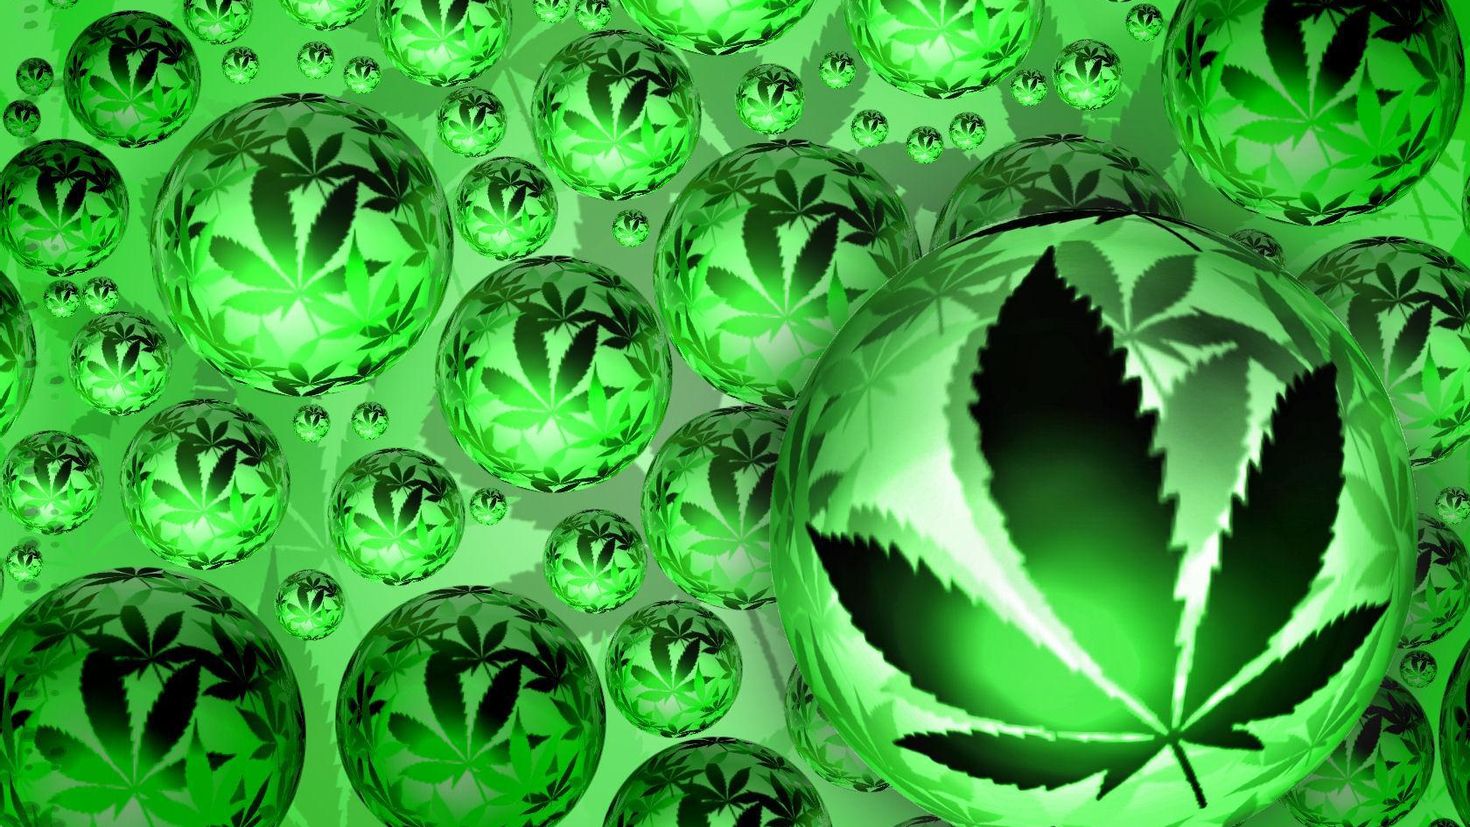 Картинки с марихуаной скачать бесплатно есть ли толк от дикой конопли